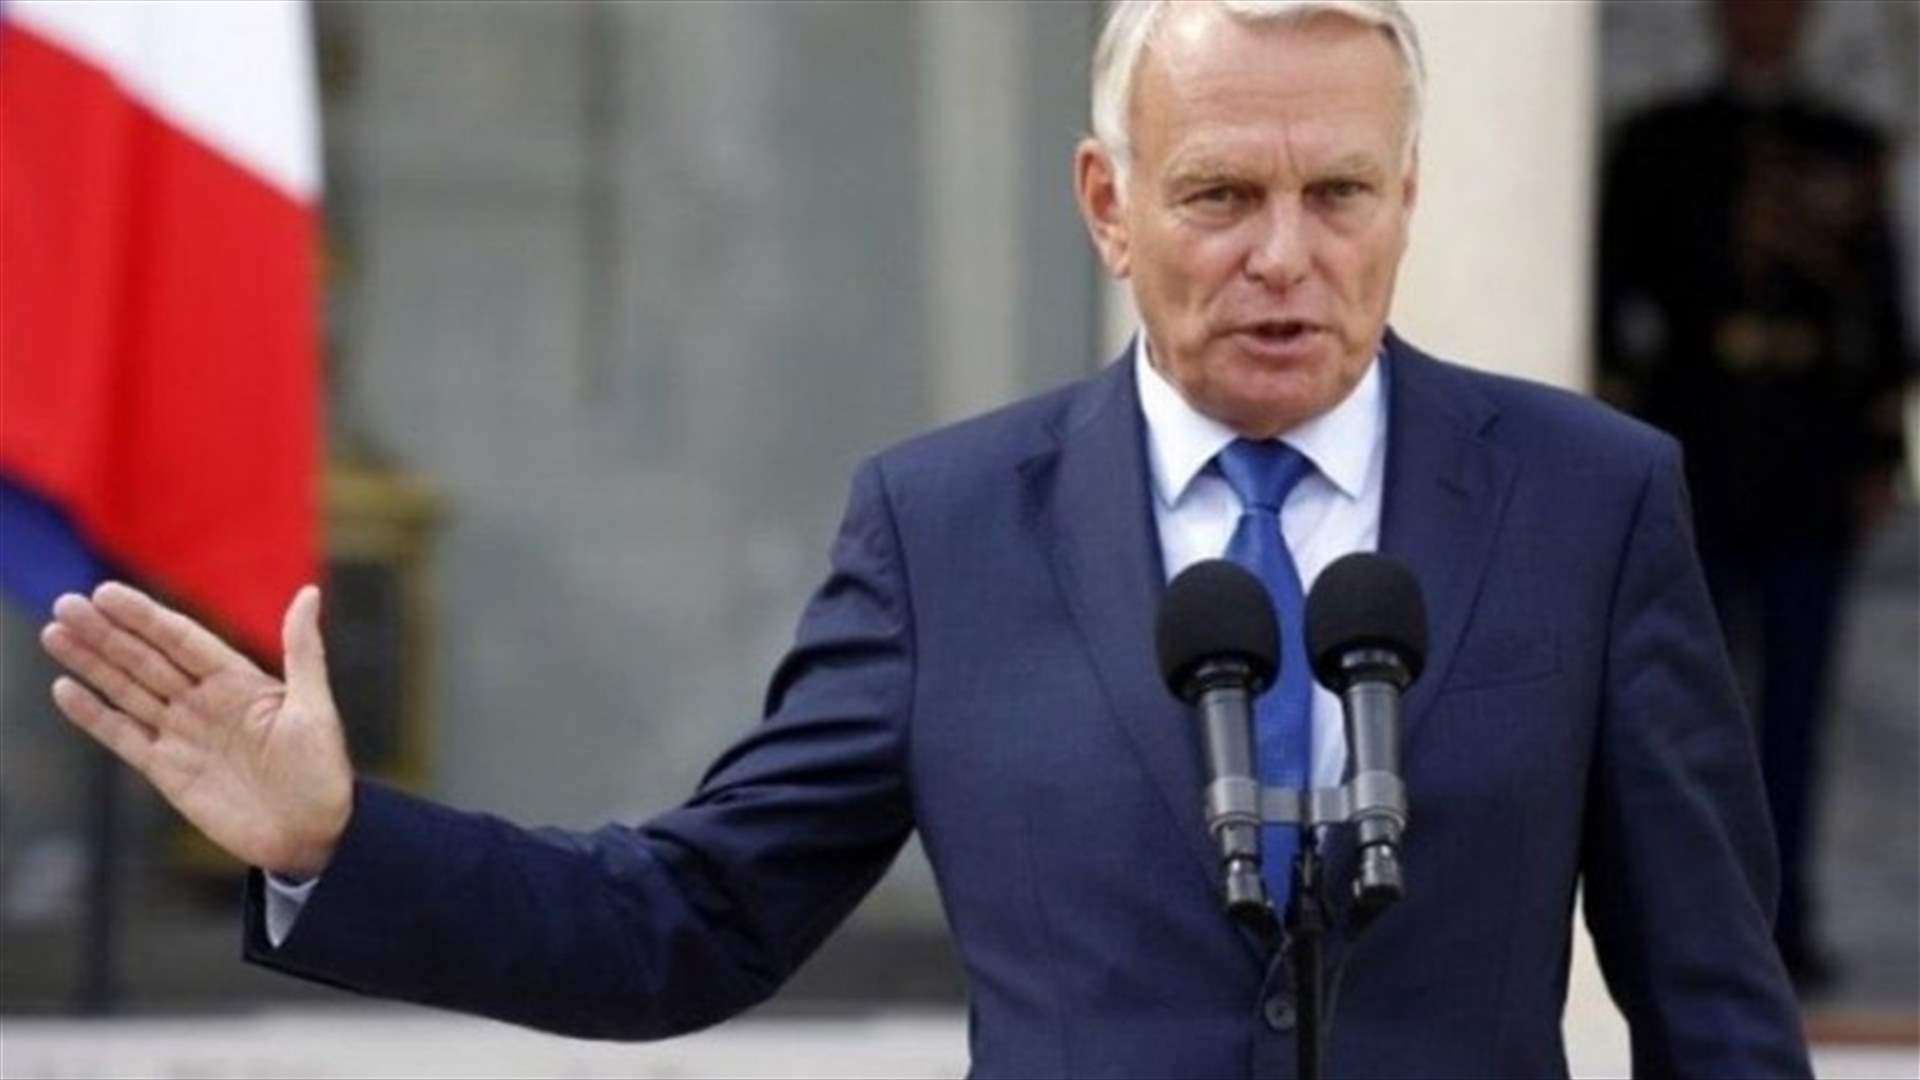 فرنسا تدعو روسيا وإيران للتخلي عن استراتيجية الطريق المسدود في سوريا